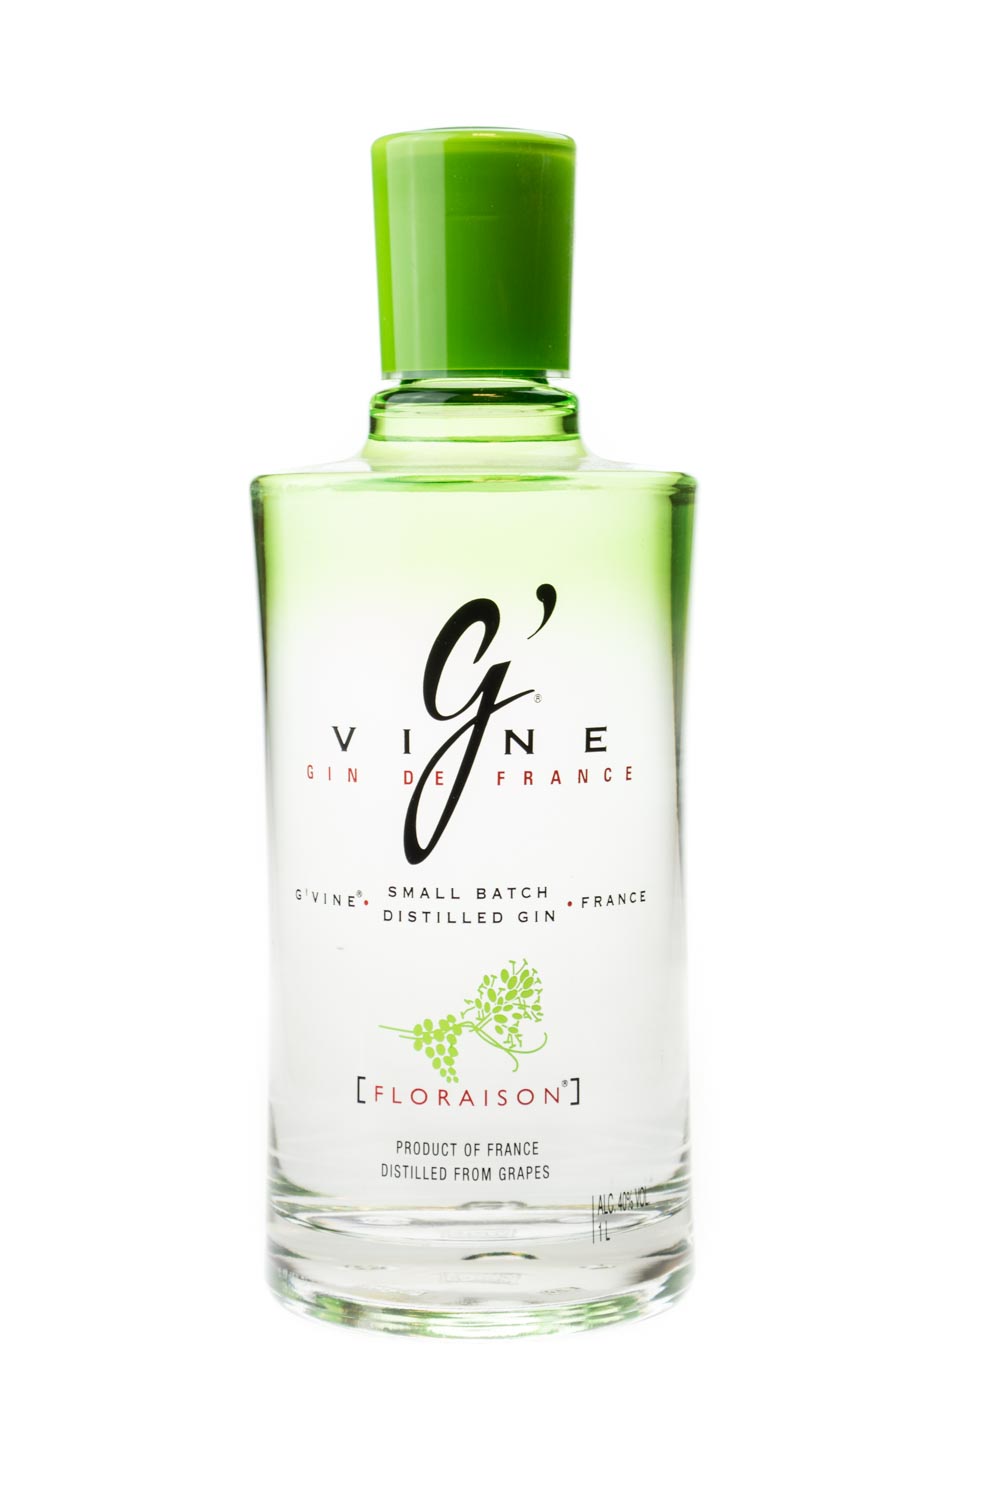 G-Vine Floraison Gin - 1 Liter 40% vol